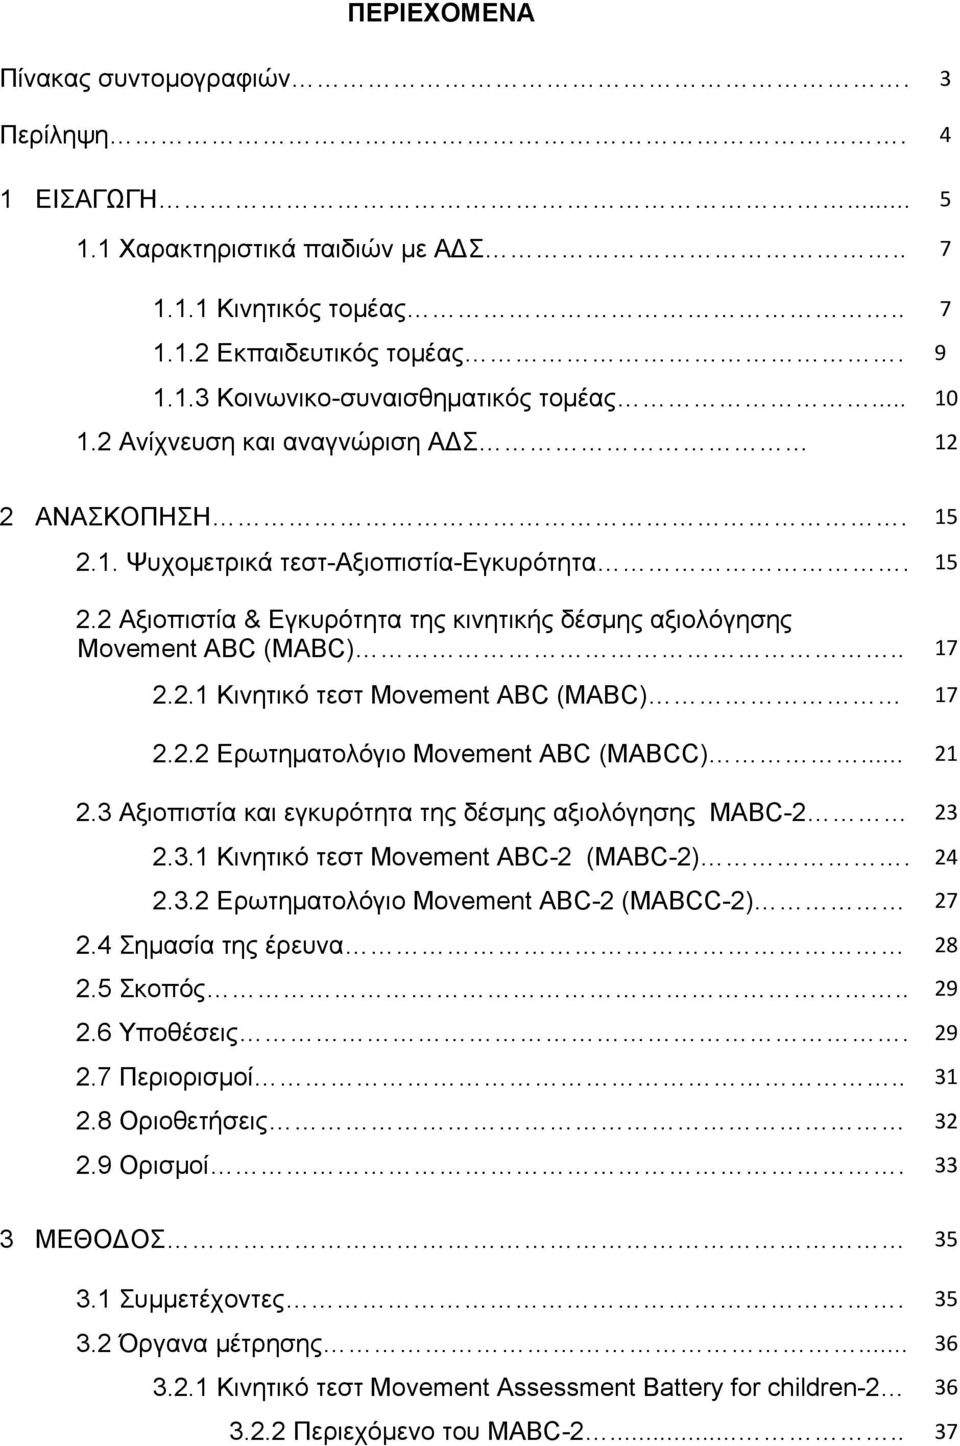 2.2 Ερωτηματολόγιο Movement ABC (MABCC)... 21 2.3 Αξιοπιστία και εγκυρότητα της δέσμης αξιολόγησης MABC-2 23 2.3.1 Κινητικό τεστ Movement ABC-2 (MABC-2). 24 2.3.2 Ερωτηματολόγιο Movement ABC-2 (MABCC-2) 27 2.